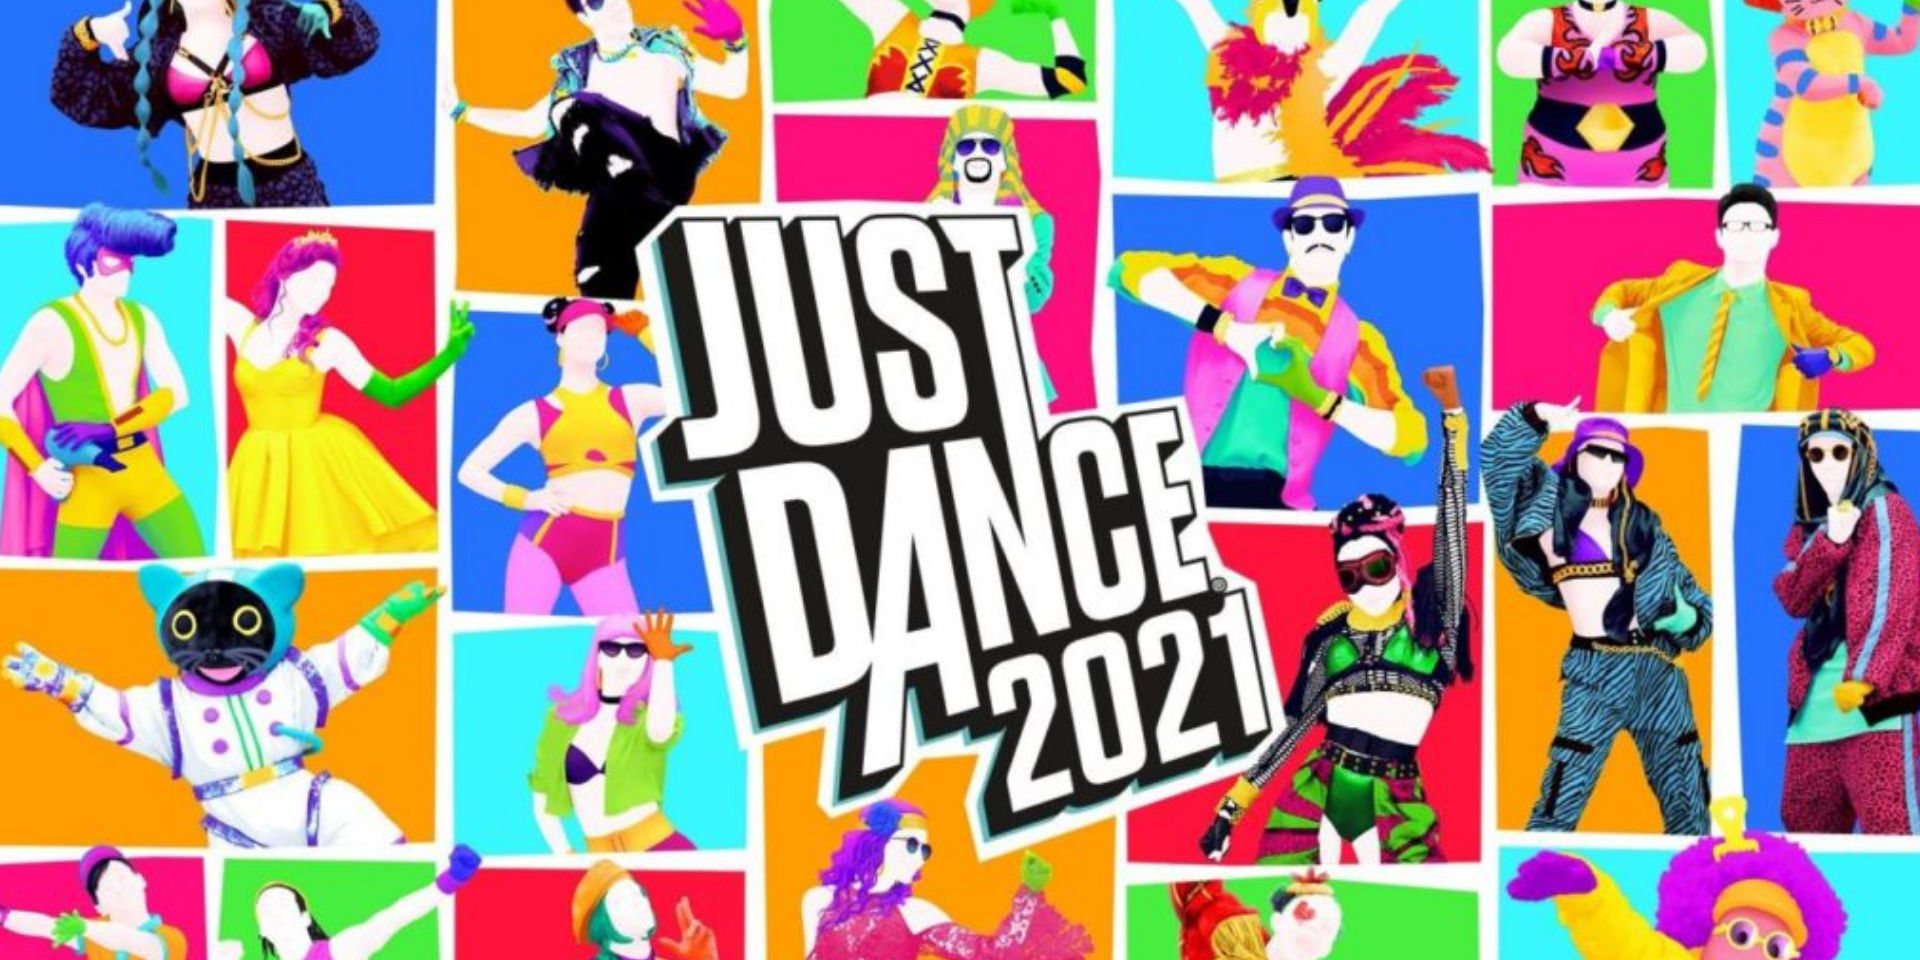 Continua a ballare con Just Dance 2021